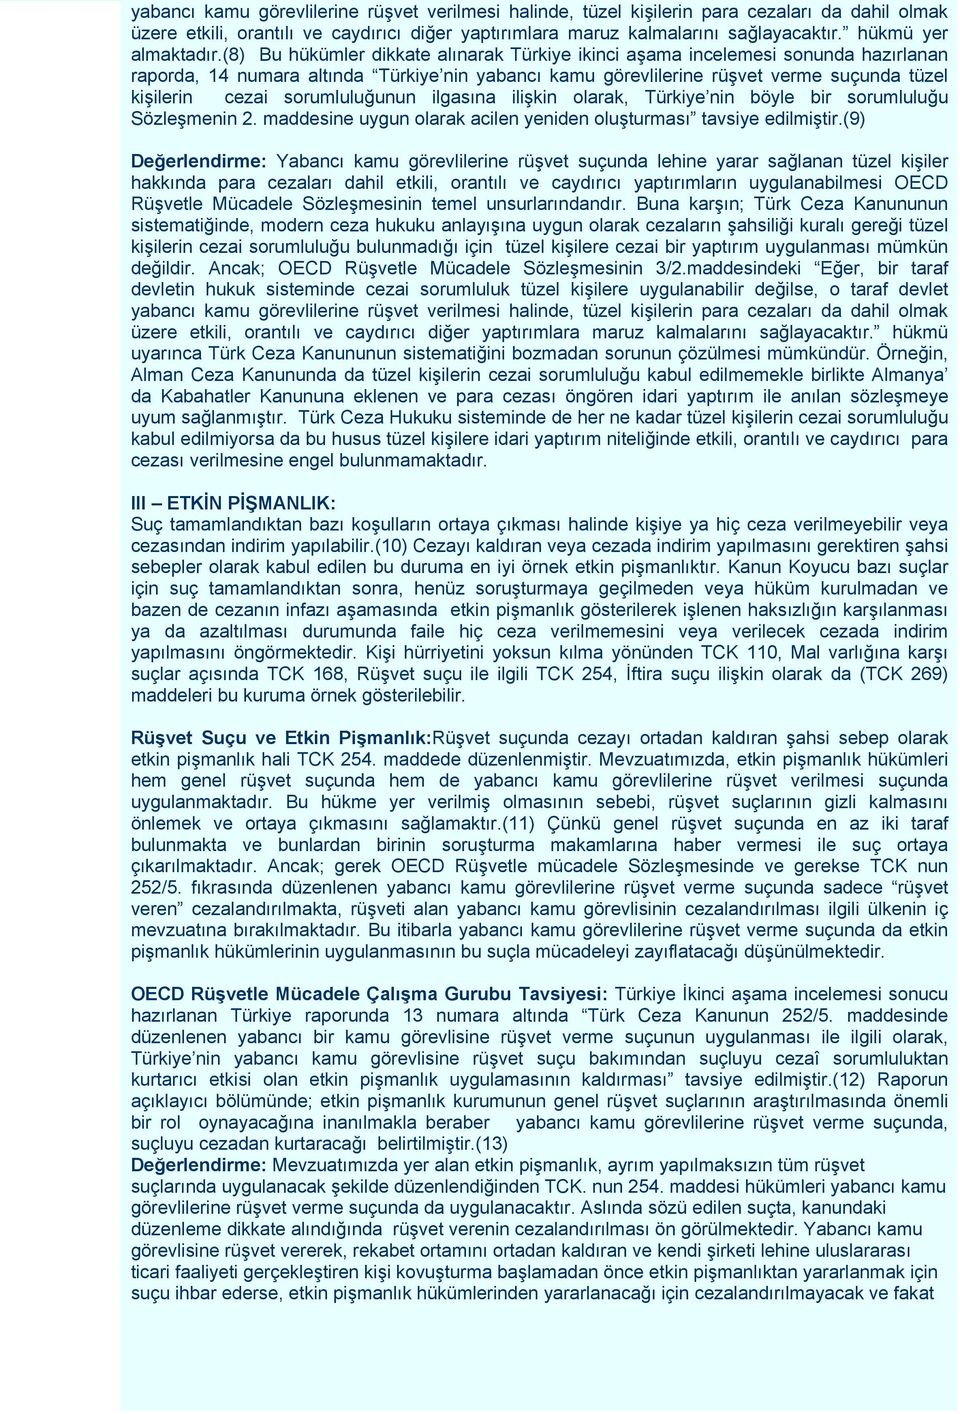 (8) Bu hükümler dikkate alınarak Türkiye ikinci aşama incelemesi sonunda hazırlanan raporda, 14 numara altında Türkiye nin yabancı kamu görevlilerine rüşvet verme suçunda tüzel kişilerin cezai